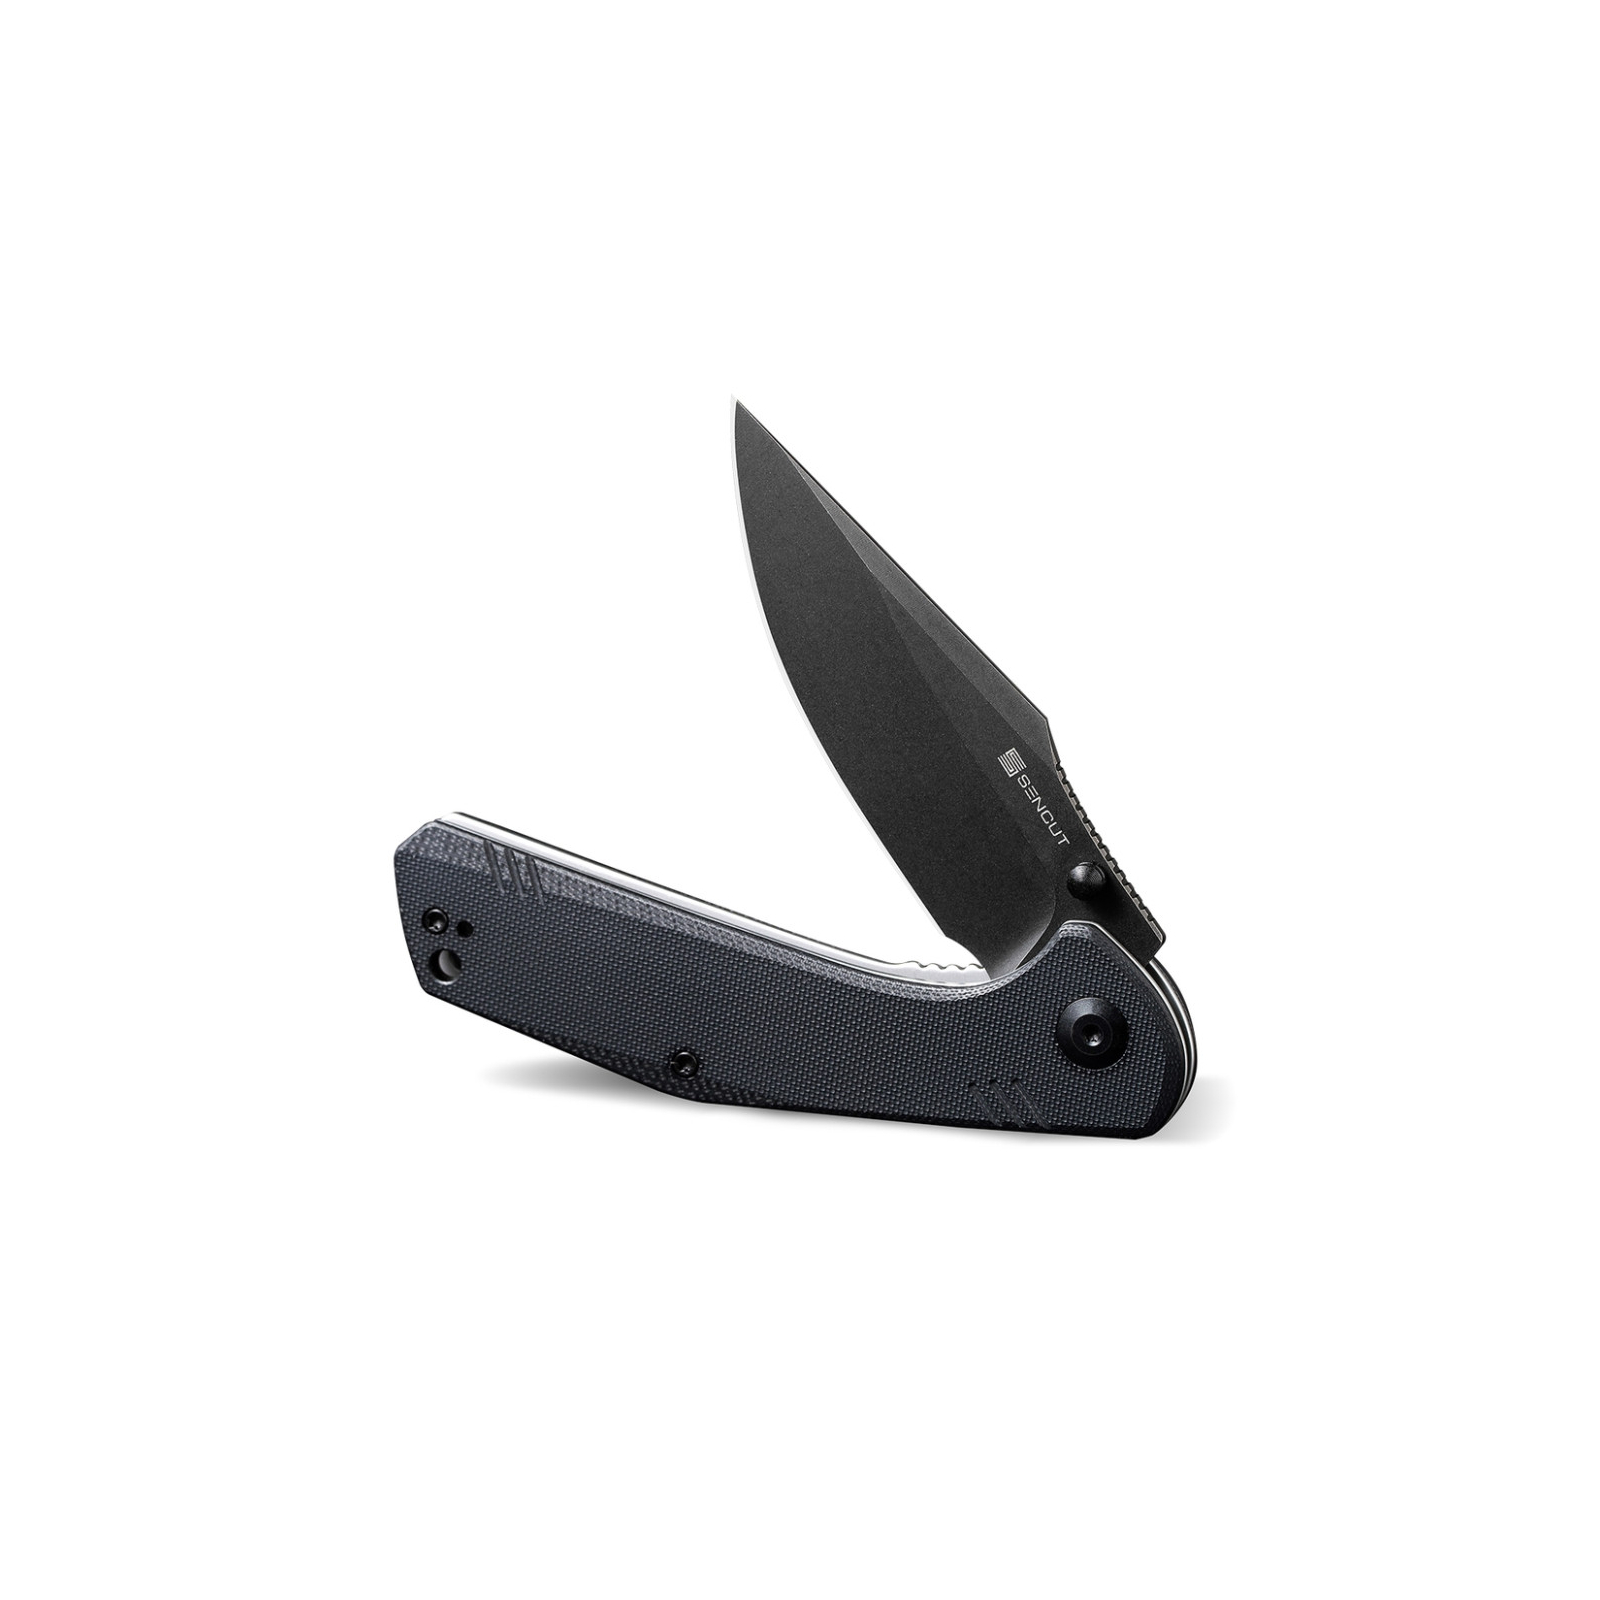 Нож Sencut Actium Blackwash Black G10 (SA02C) изображение 4